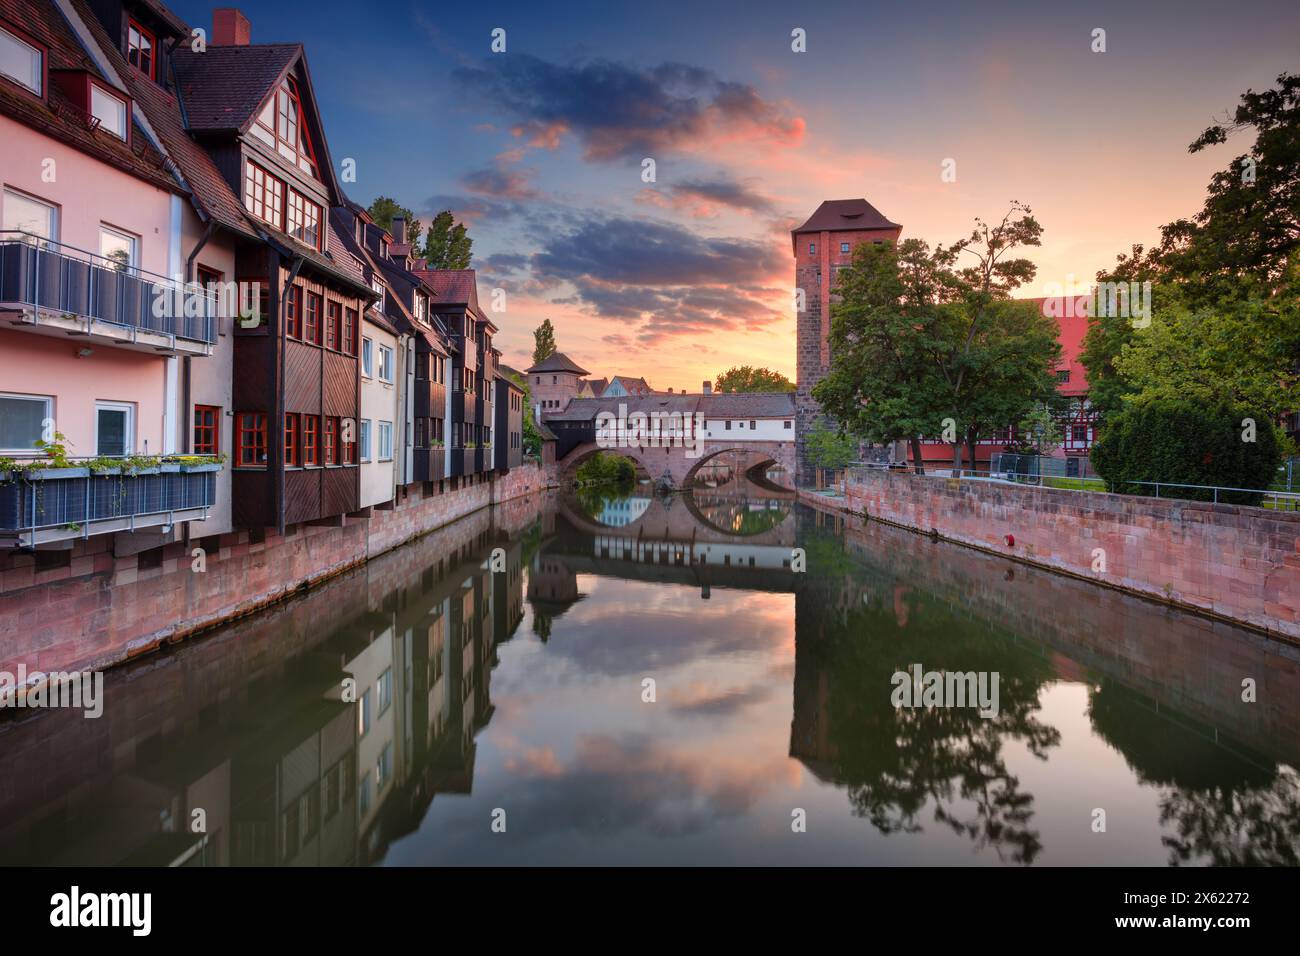 Norimberga, Germania. Immagine della città vecchia di Norimberga, Germania al tramonto primaverile. Foto Stock